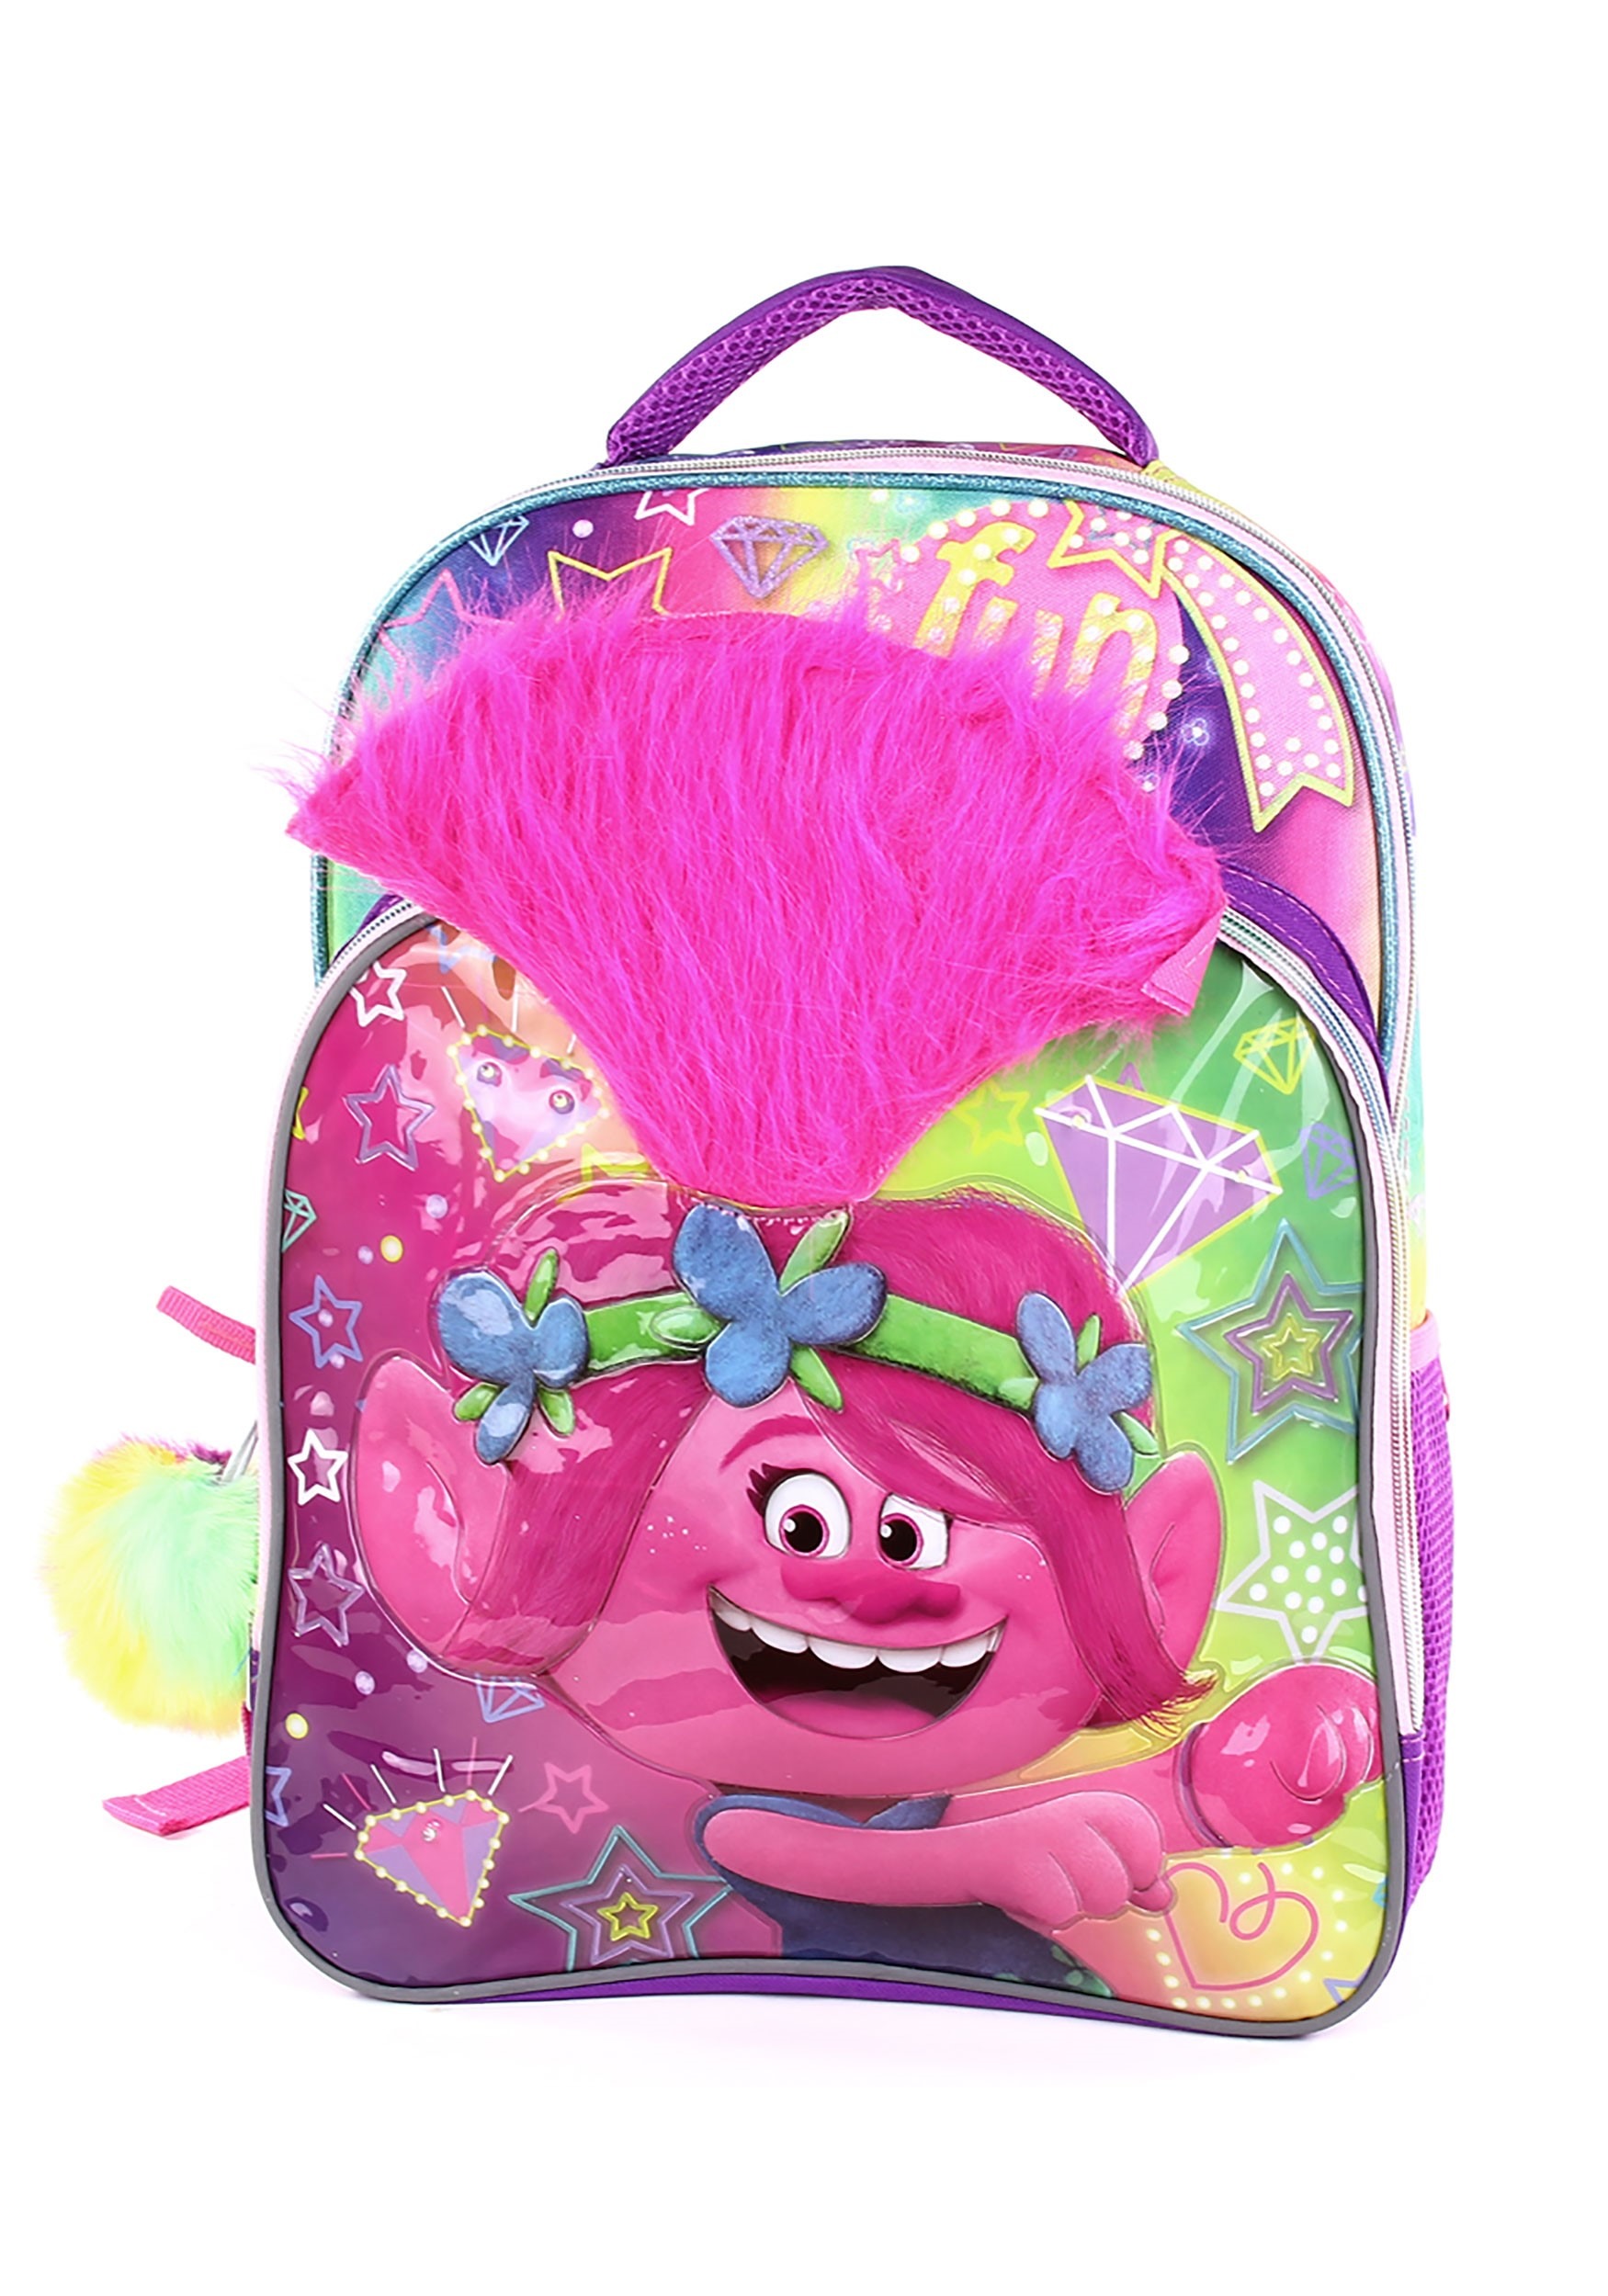 Poppy Trolls 3D Kids Backpack W/ Pom Pom